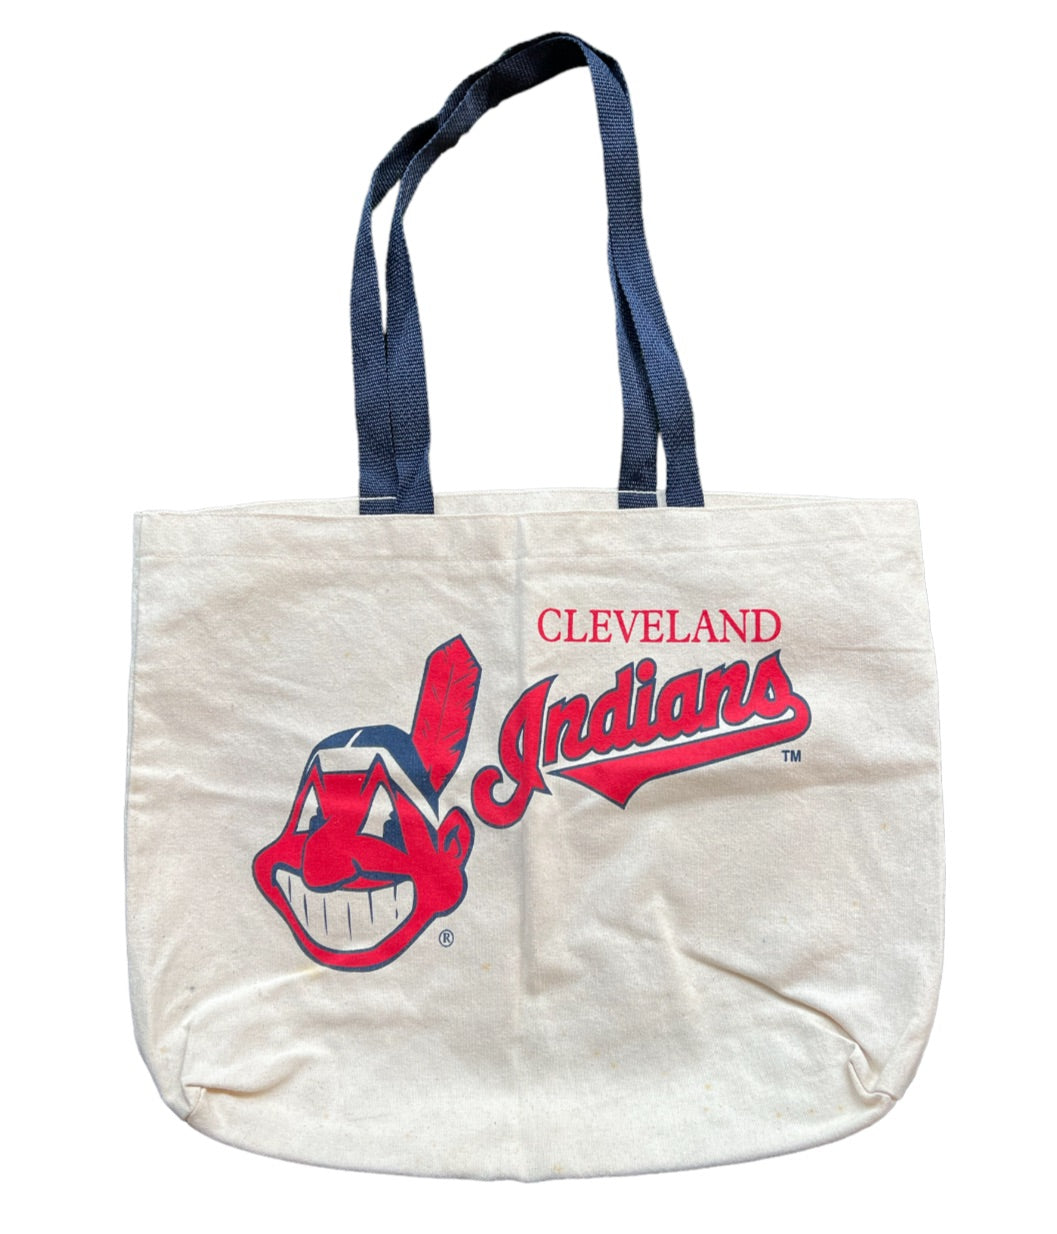 Vintage Cleveland Indians Tote bag